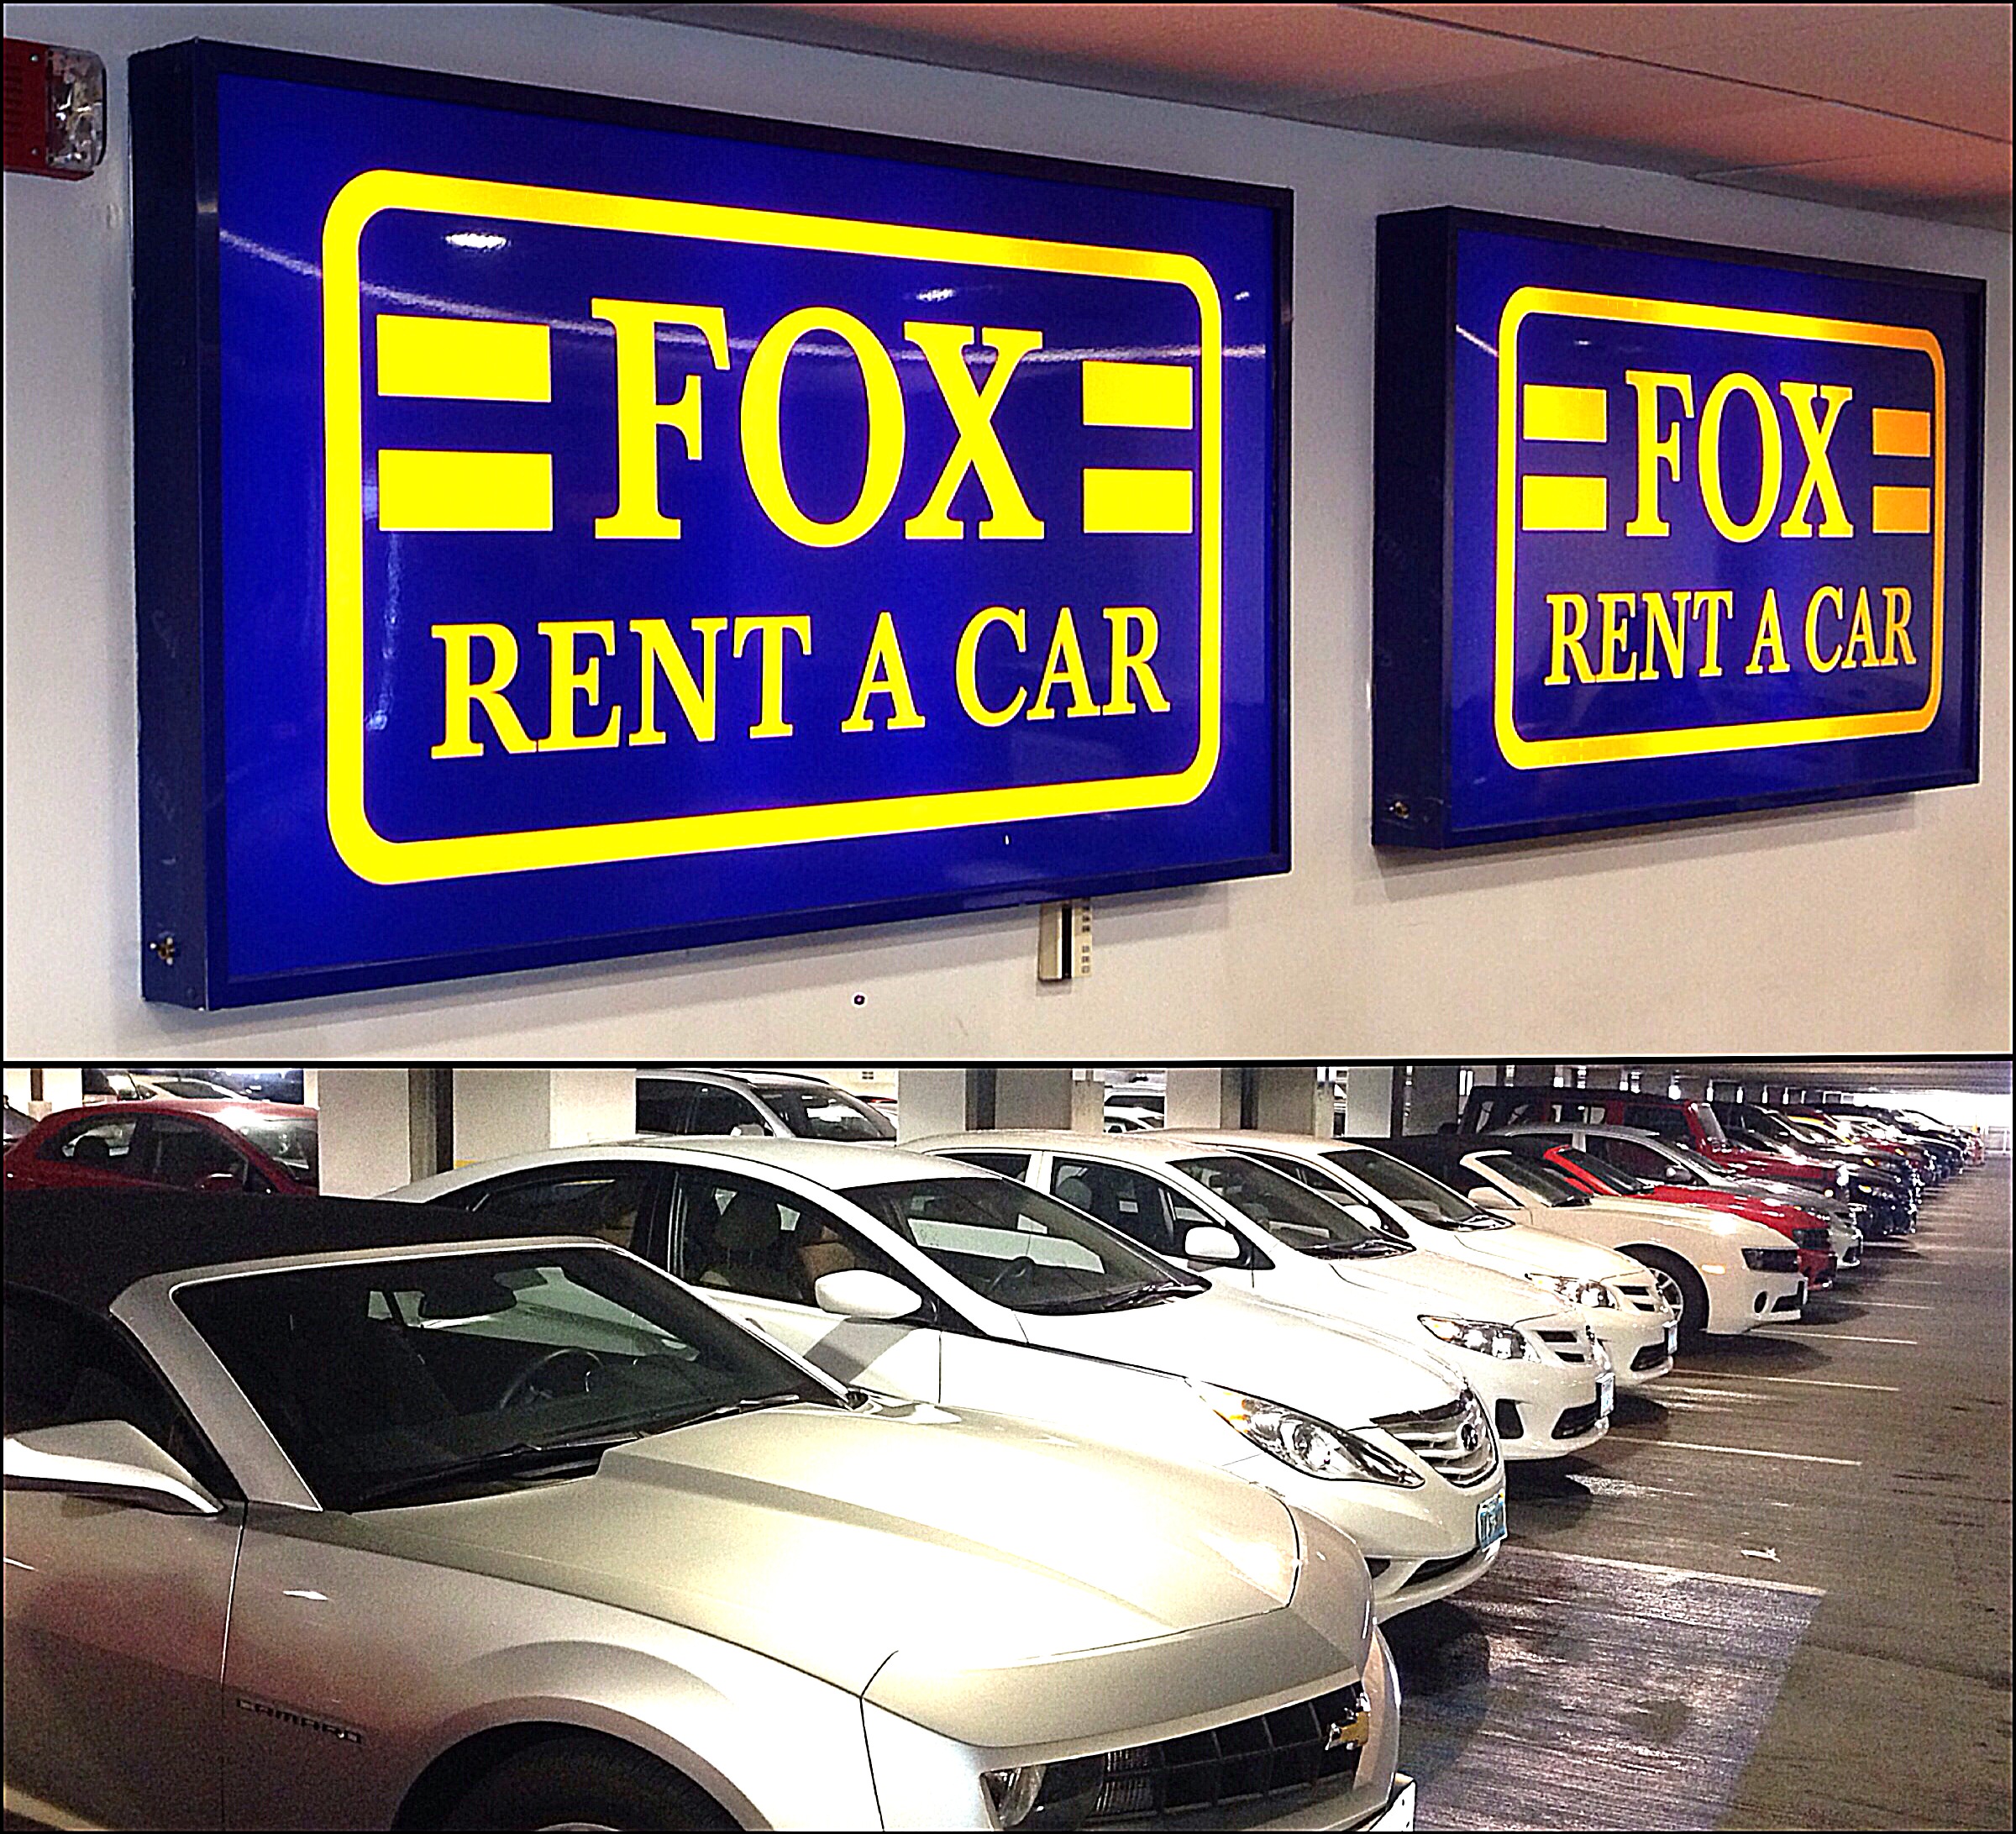 2) Fox Rent A Car